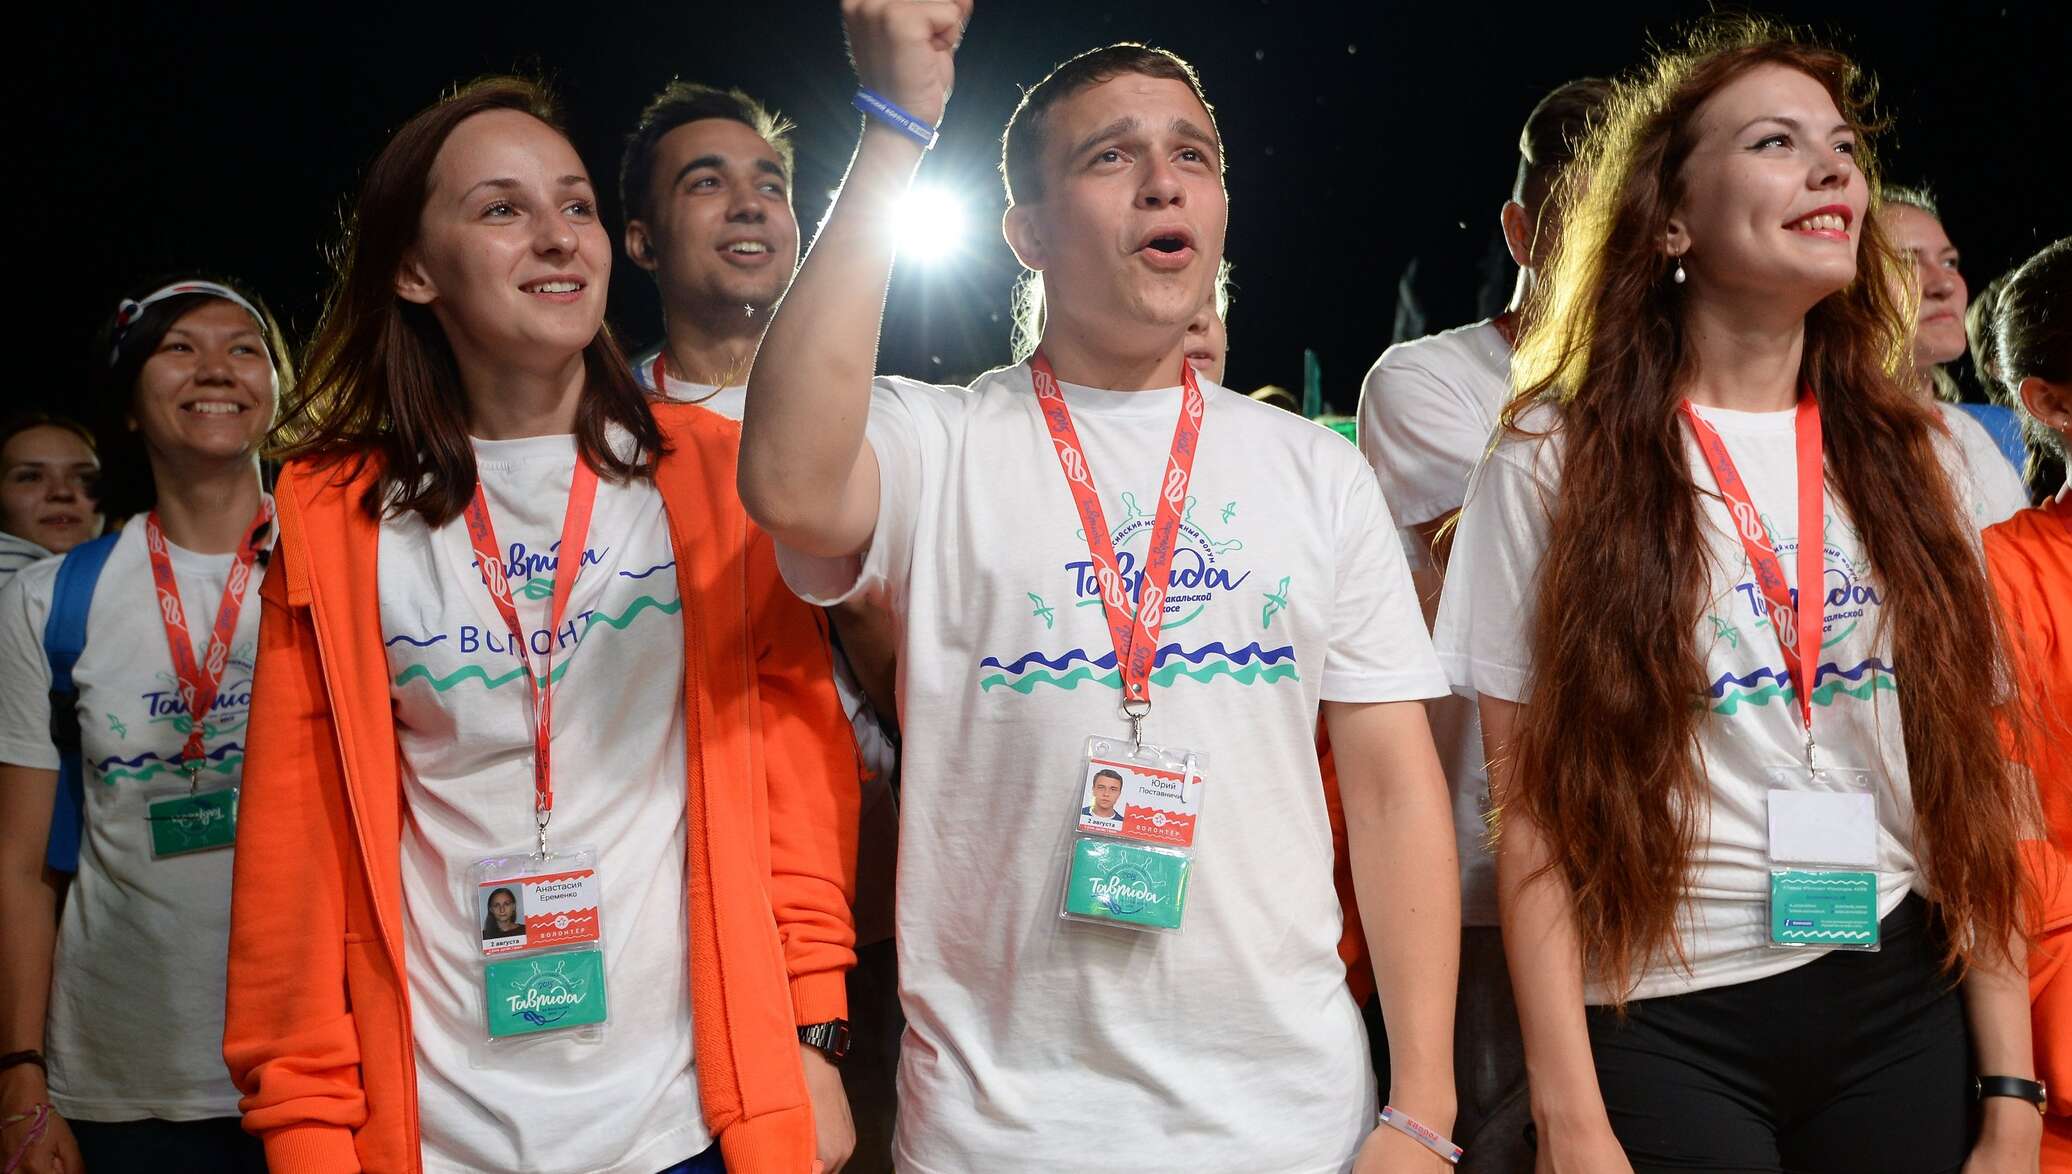 Молодежь история. Молодежный форум Таврида 2016. История молодёжного движения в России.